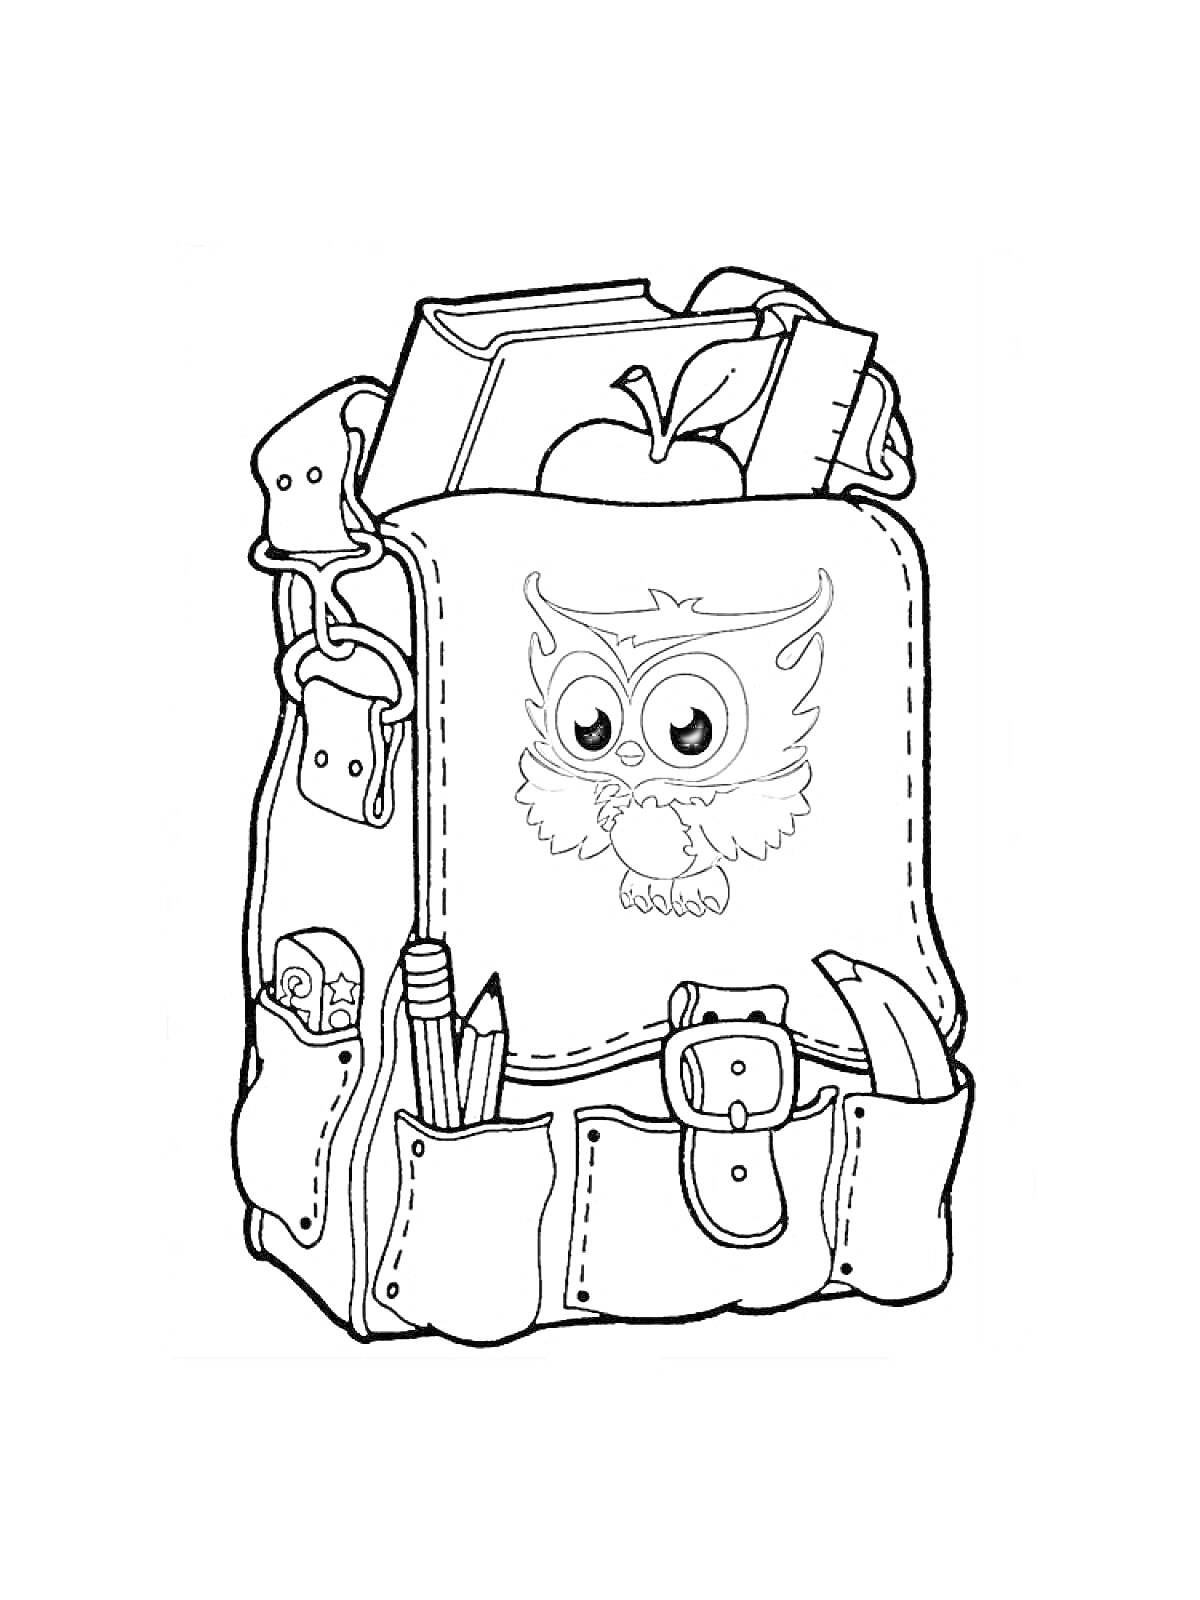 Раскраска Портфель с пайеткой, учебниками, яблоком, карандашами, линейкой и фломастером